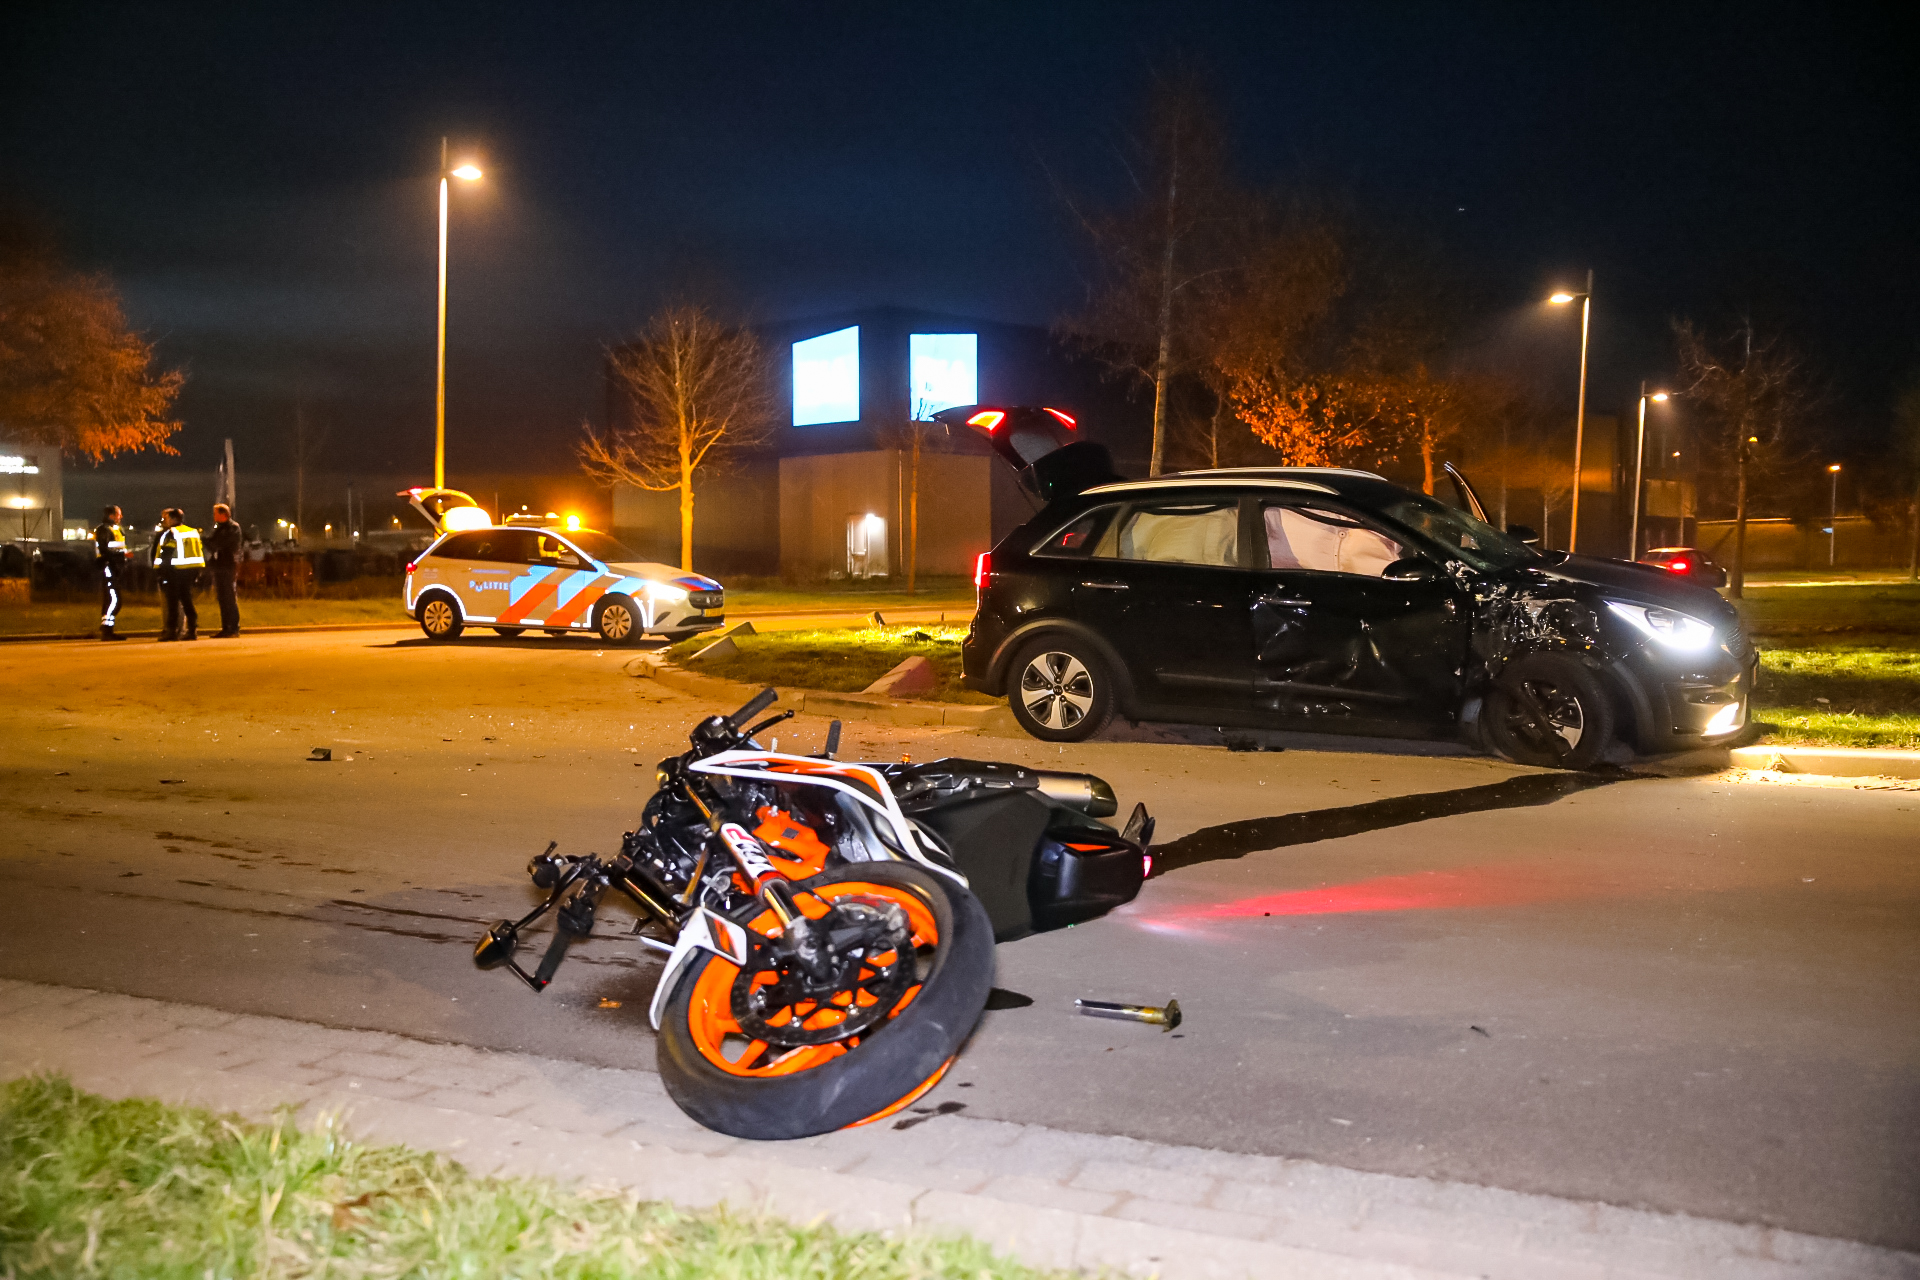 VIDEO Ernstig ongeluk in Apeldoorn, motorrijder zwaargewond